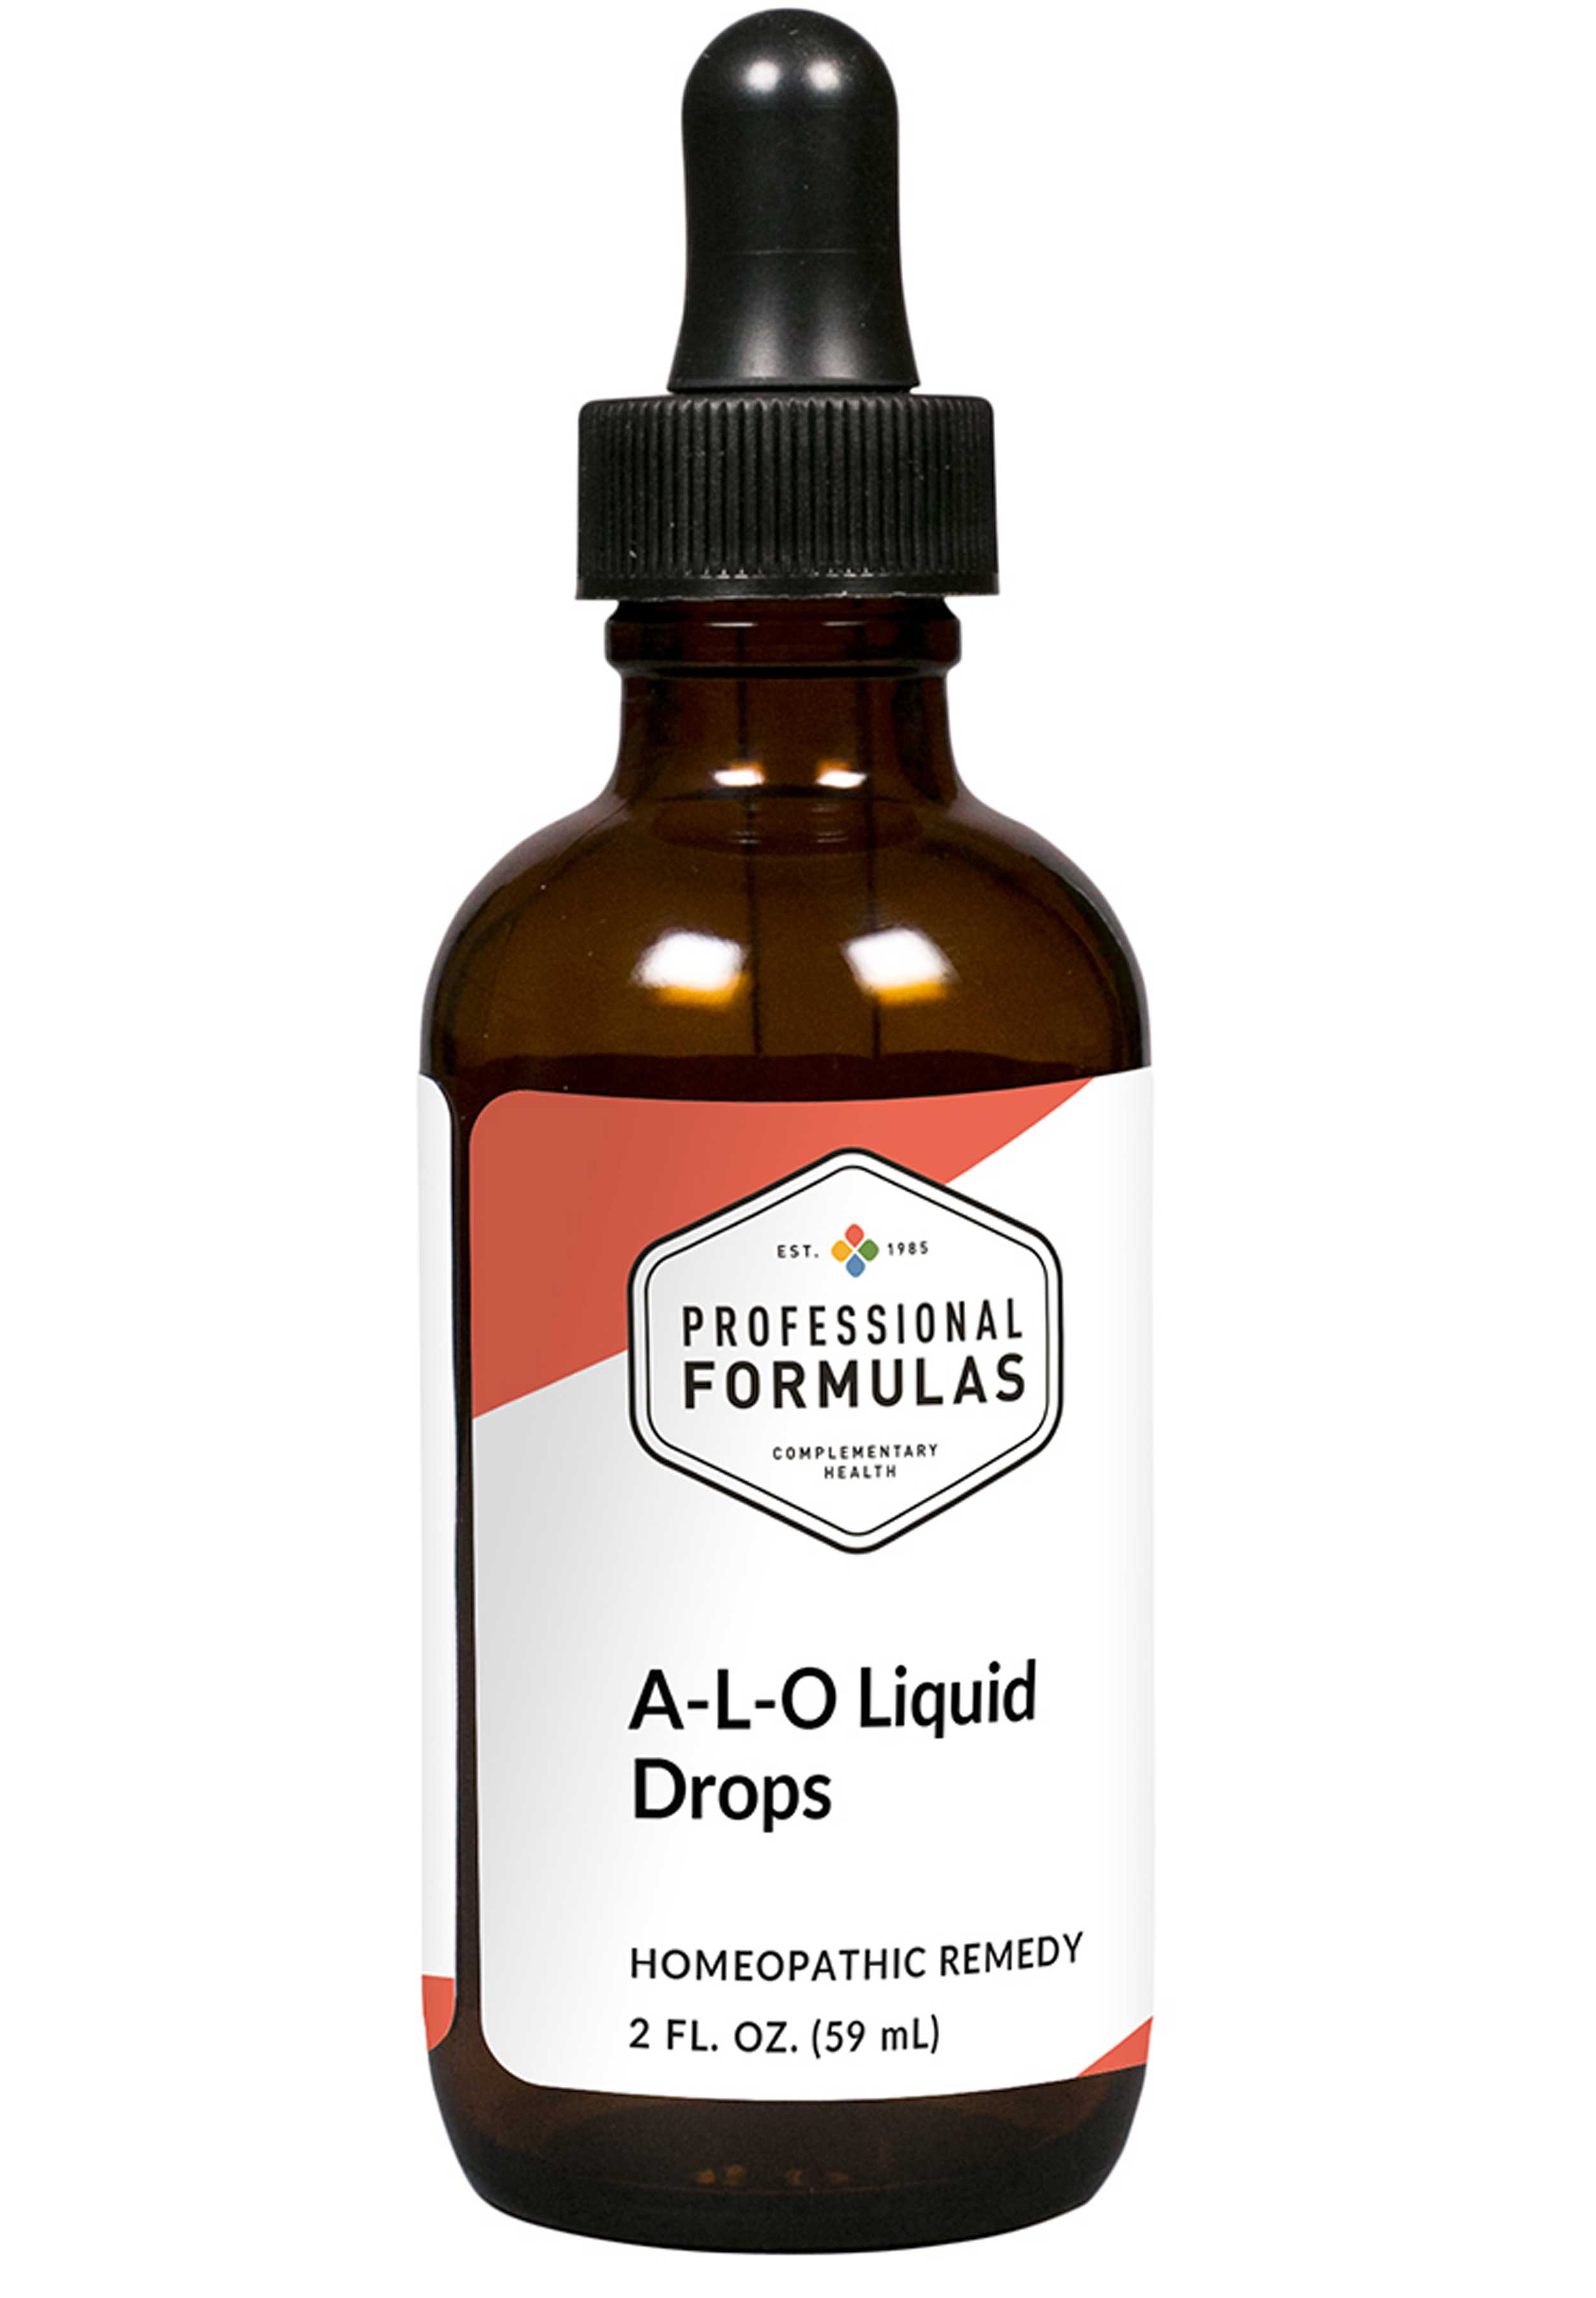 Professional Formulas A-L-O Liquid Drops